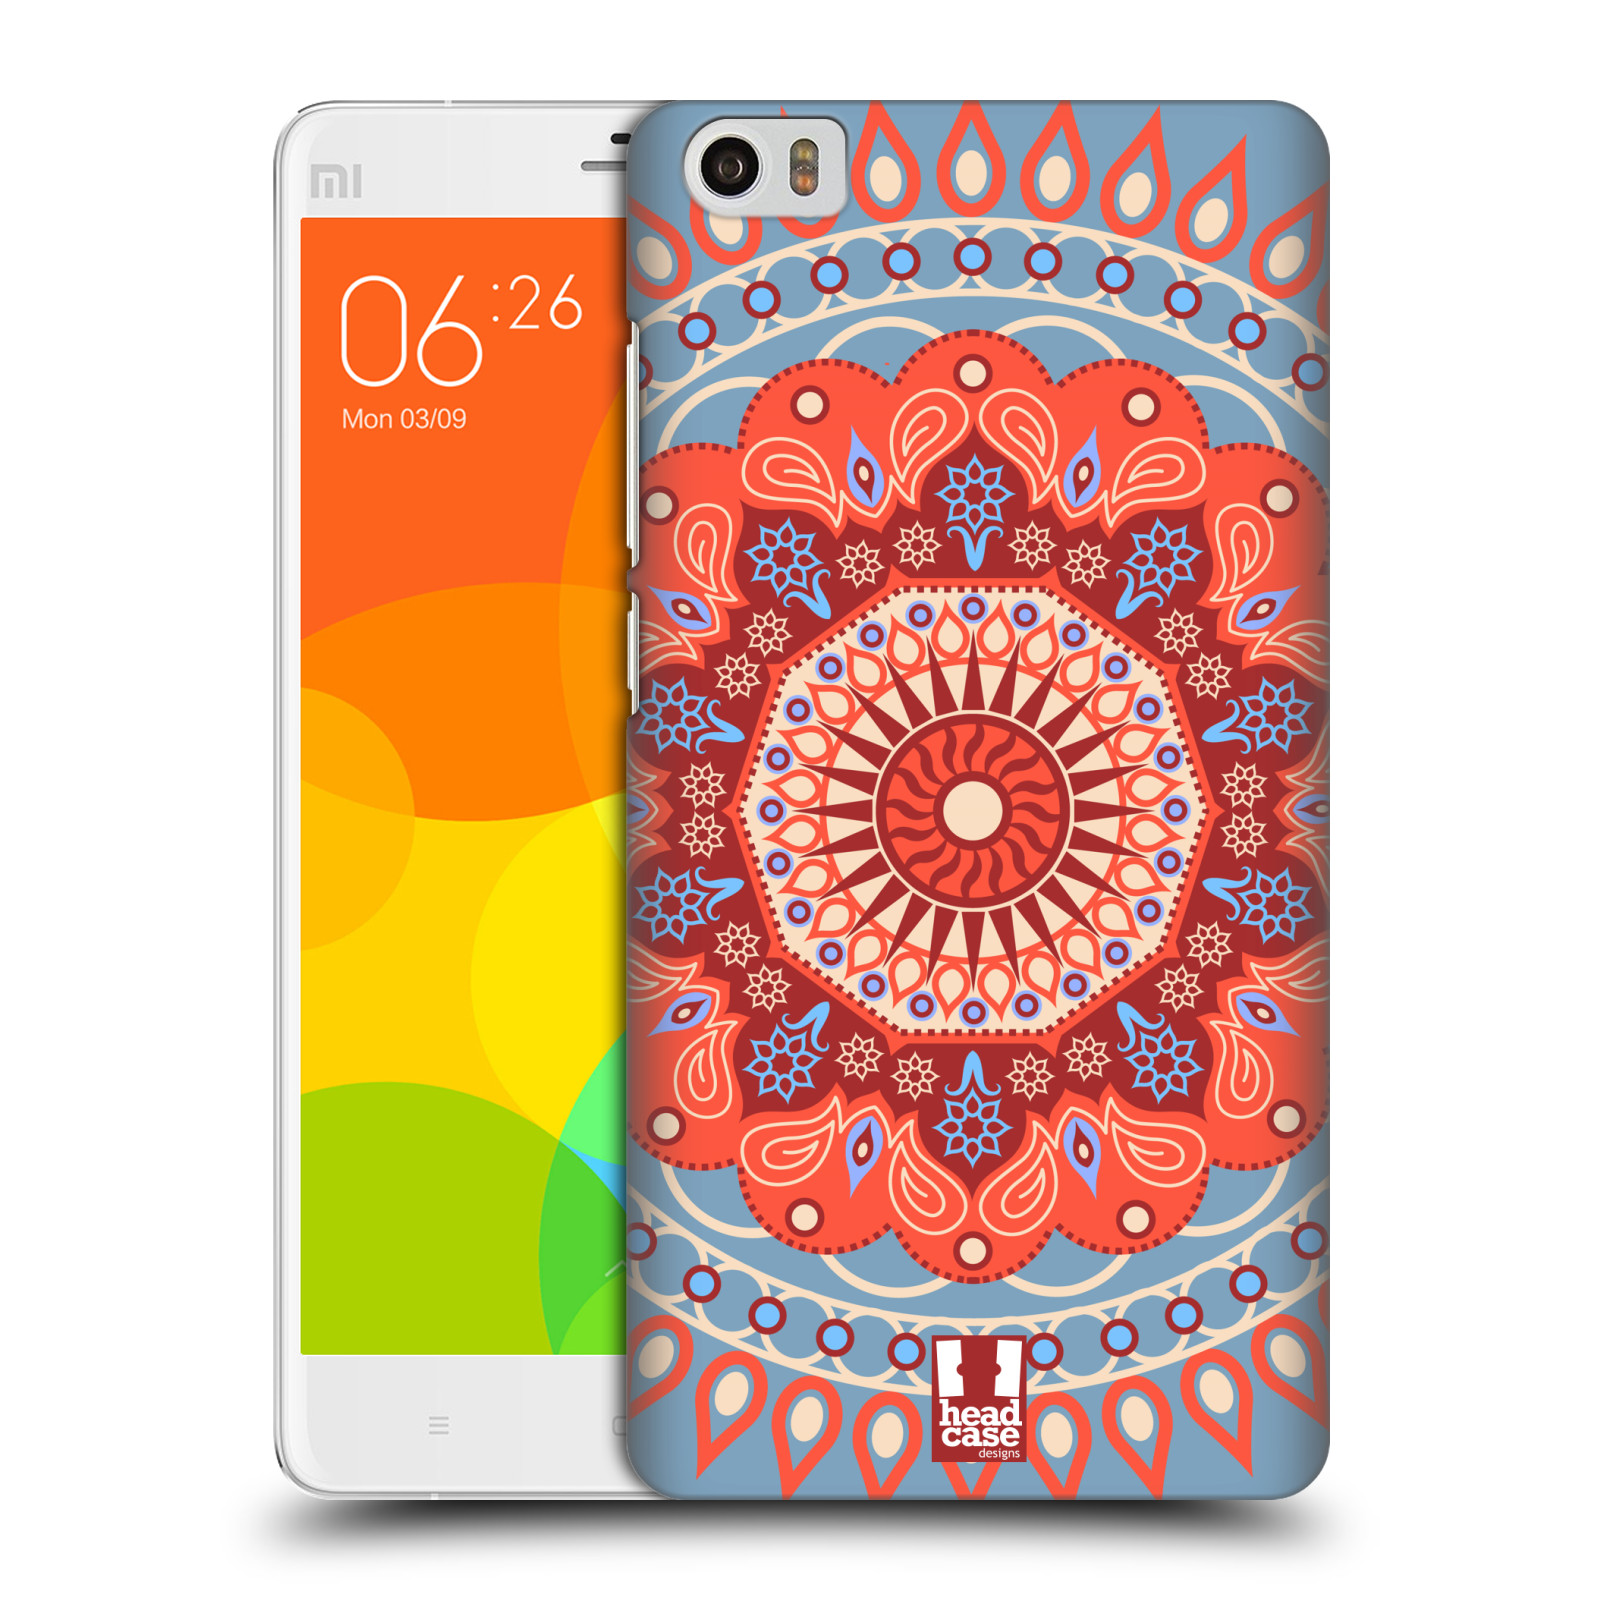 HEAD CASE pevný plastový obal na mobil XIAOMI Mi Note vzor Indie Mandala slunce barevný motiv ČERVENÁ A MODRÁ